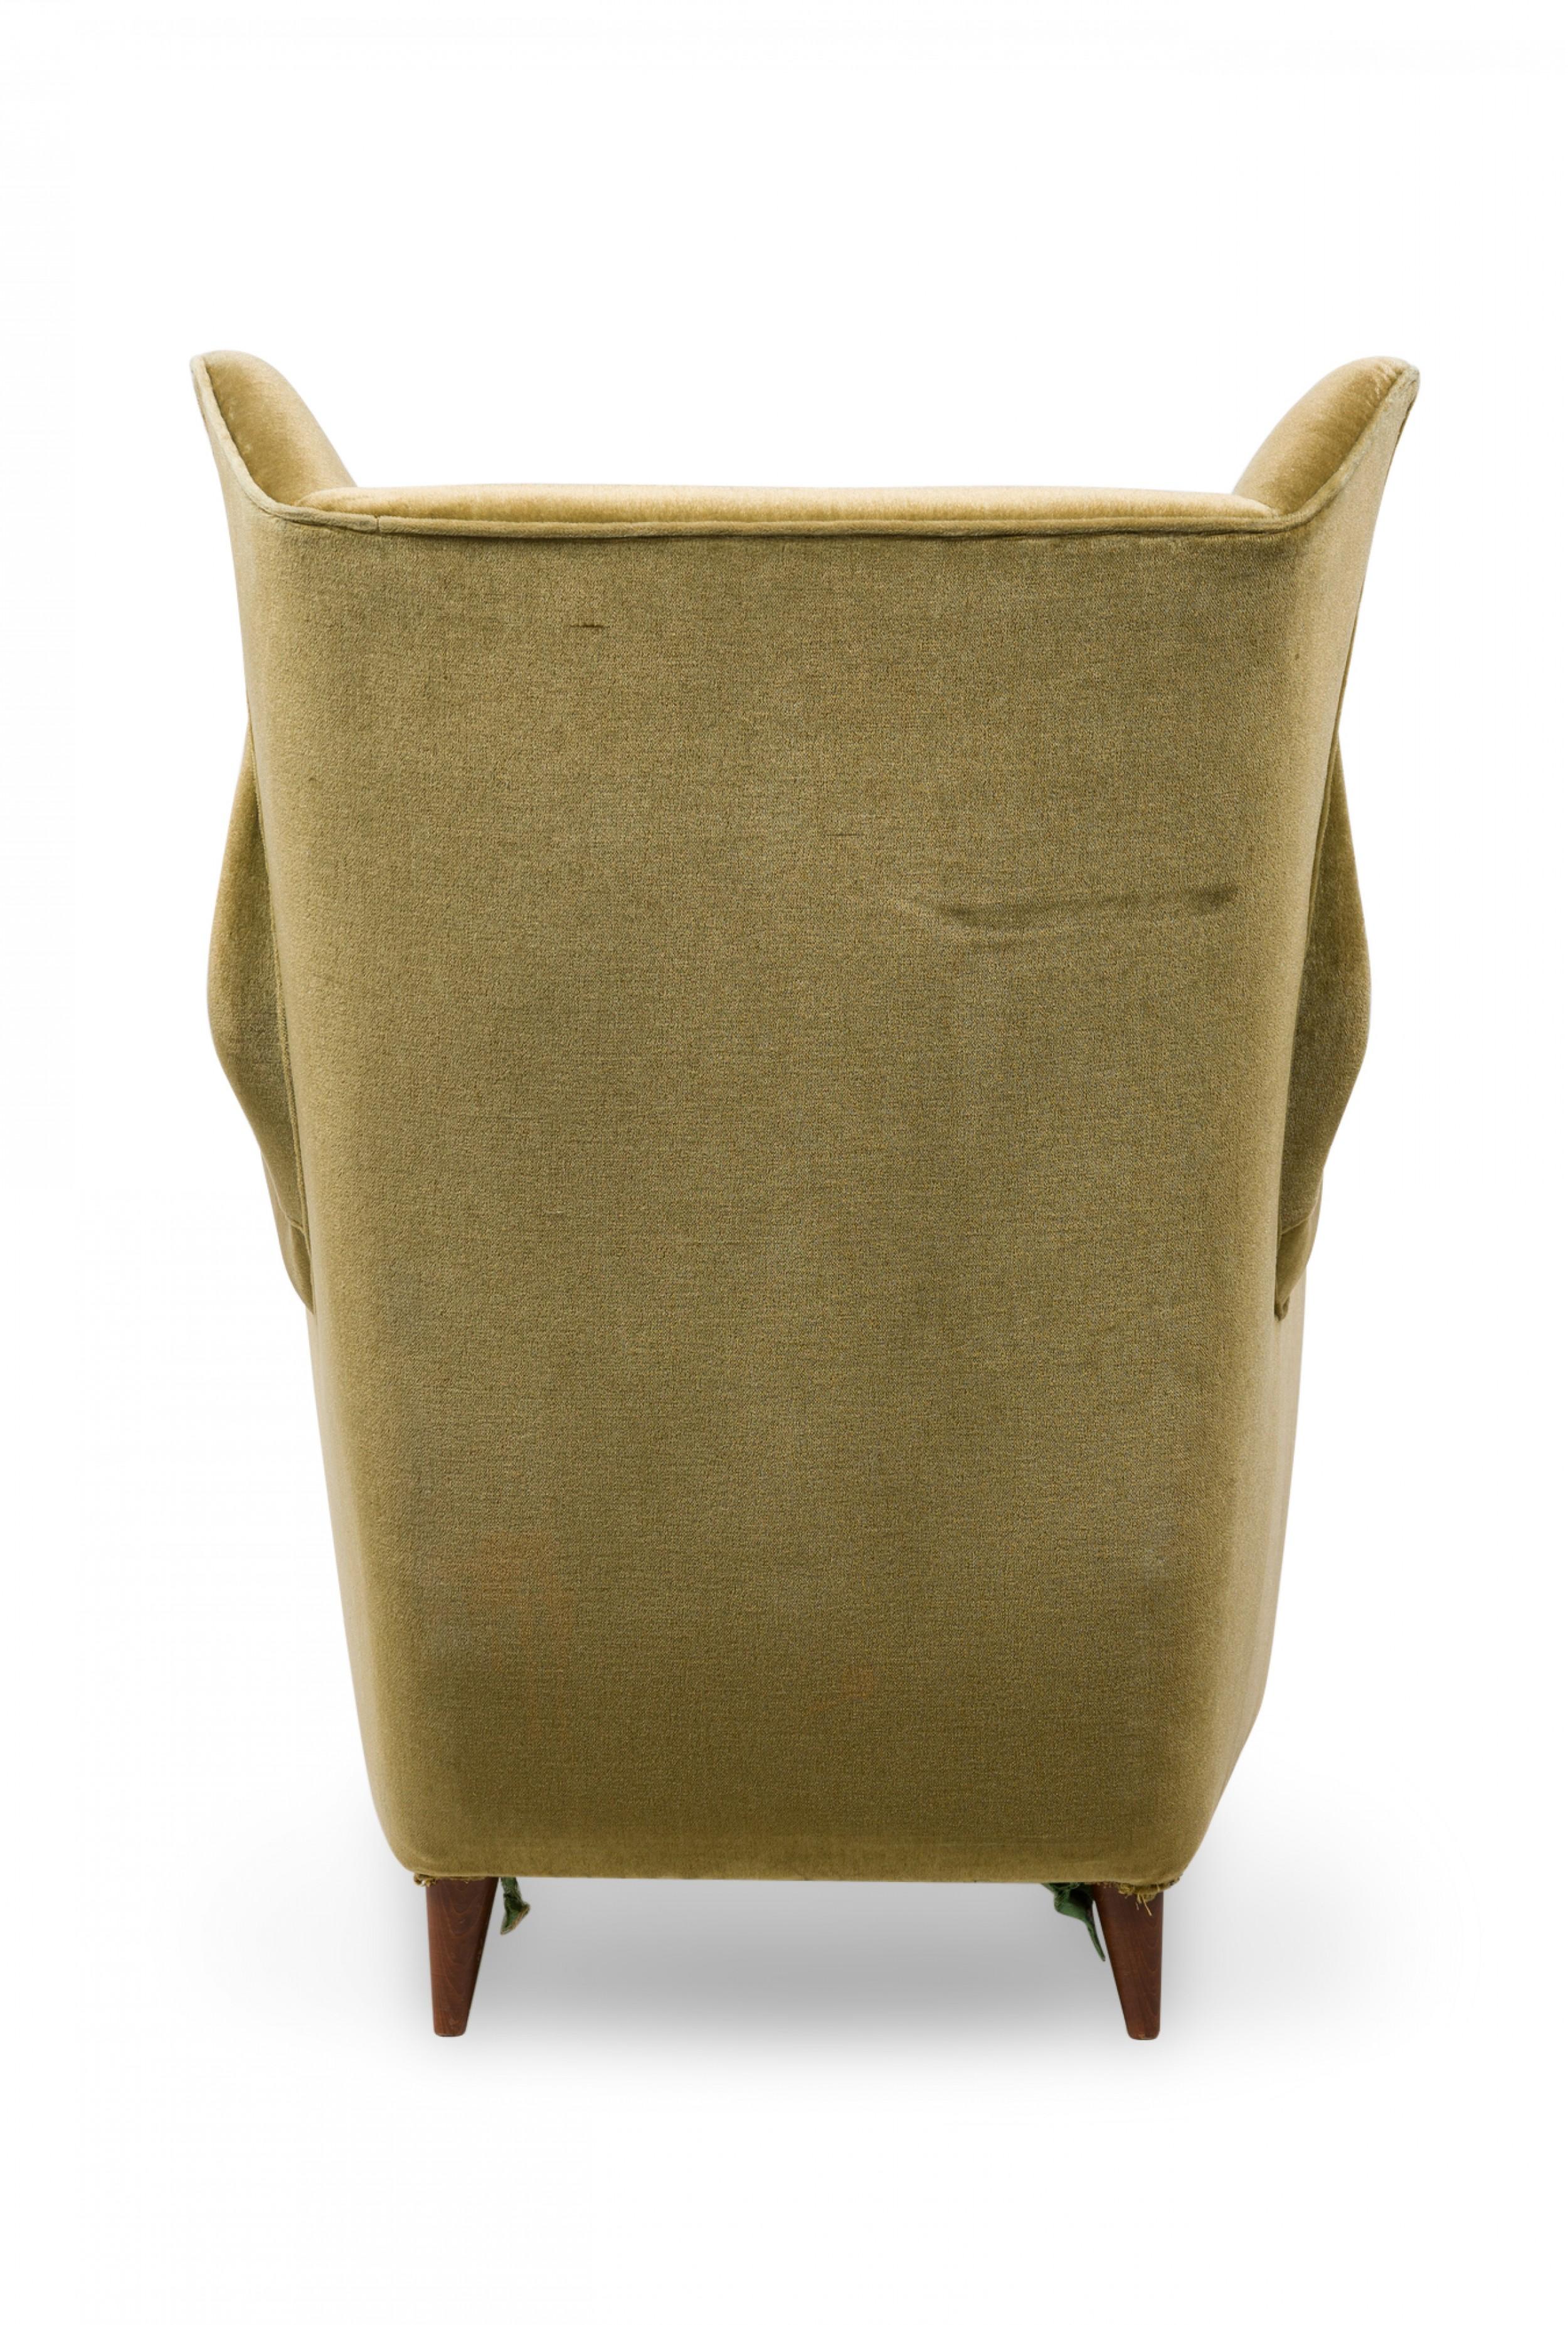 Pair of Midcentury Italian Modern Gold Velvet Upholstered Lounge / Armchairs For Sale 1